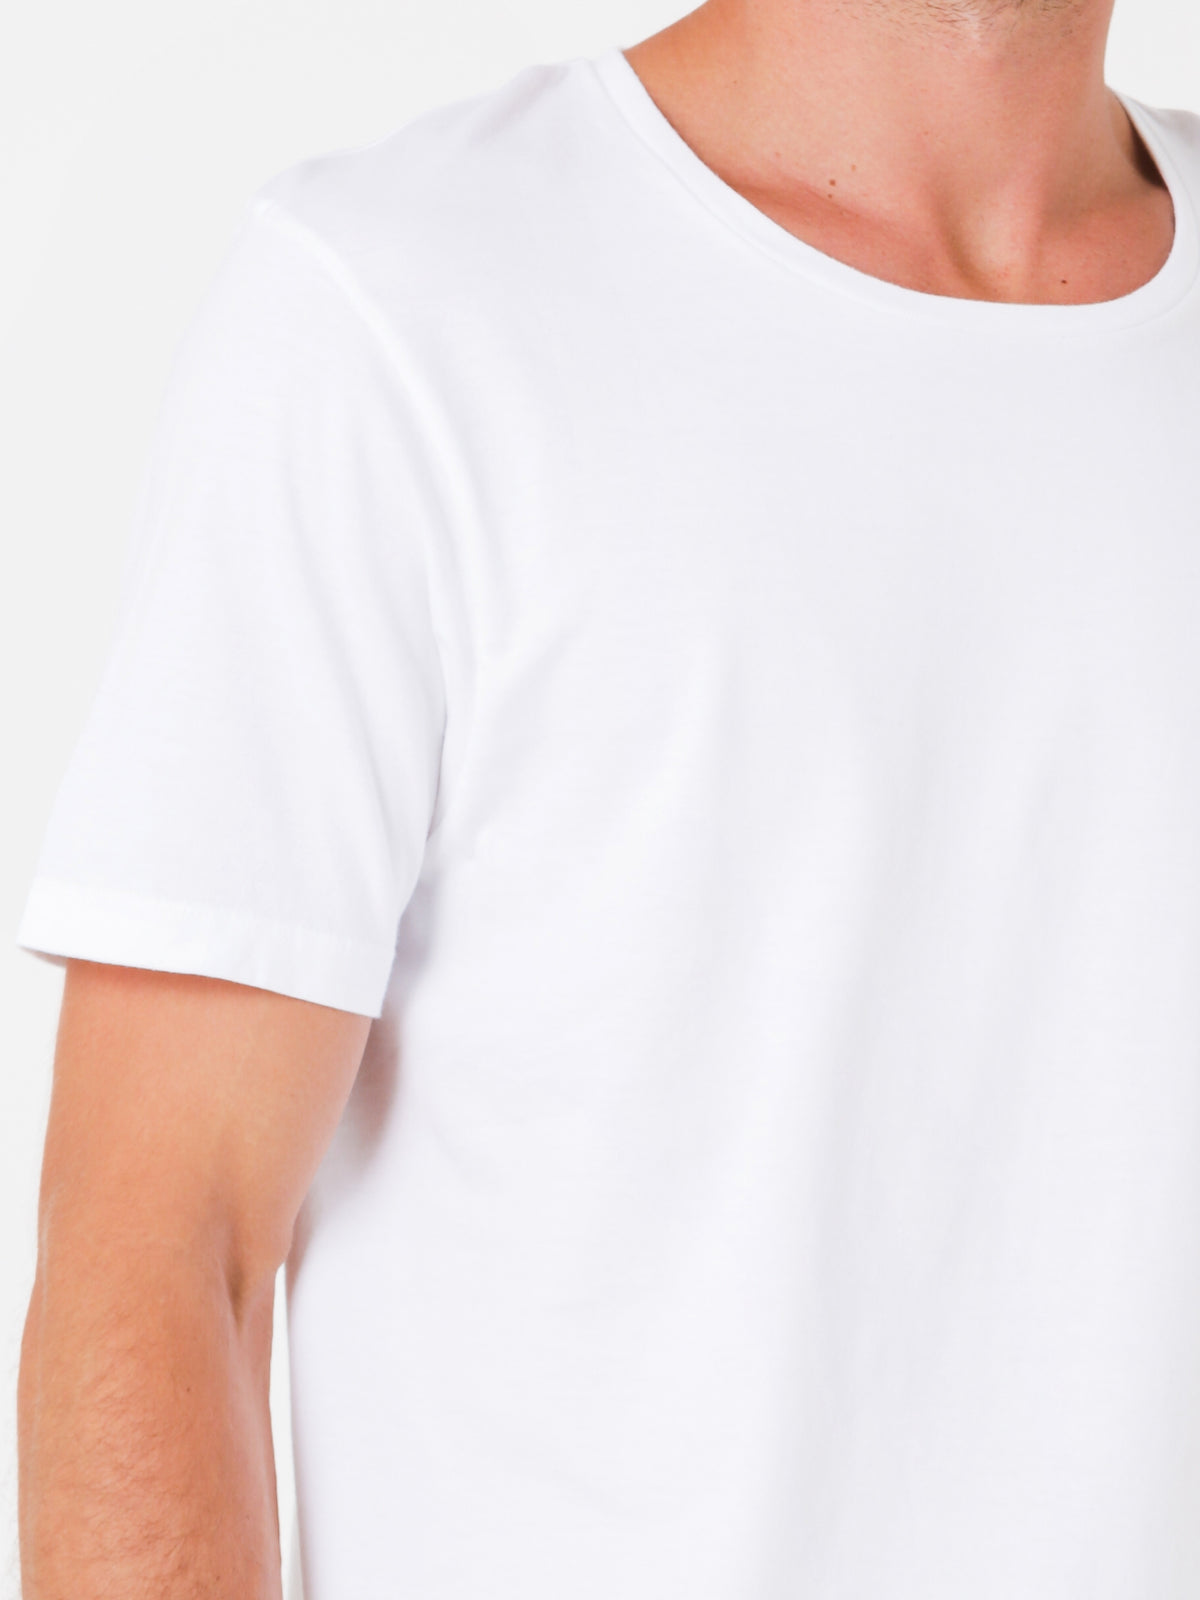 Tubular Crew Short Sleeve T-Shirt in White